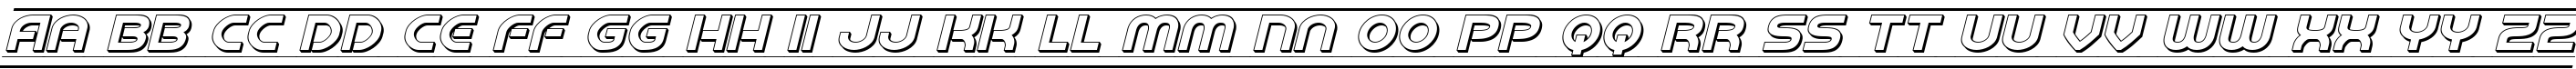 Пример написания английского алфавита шрифтом Barcade 3D Italic